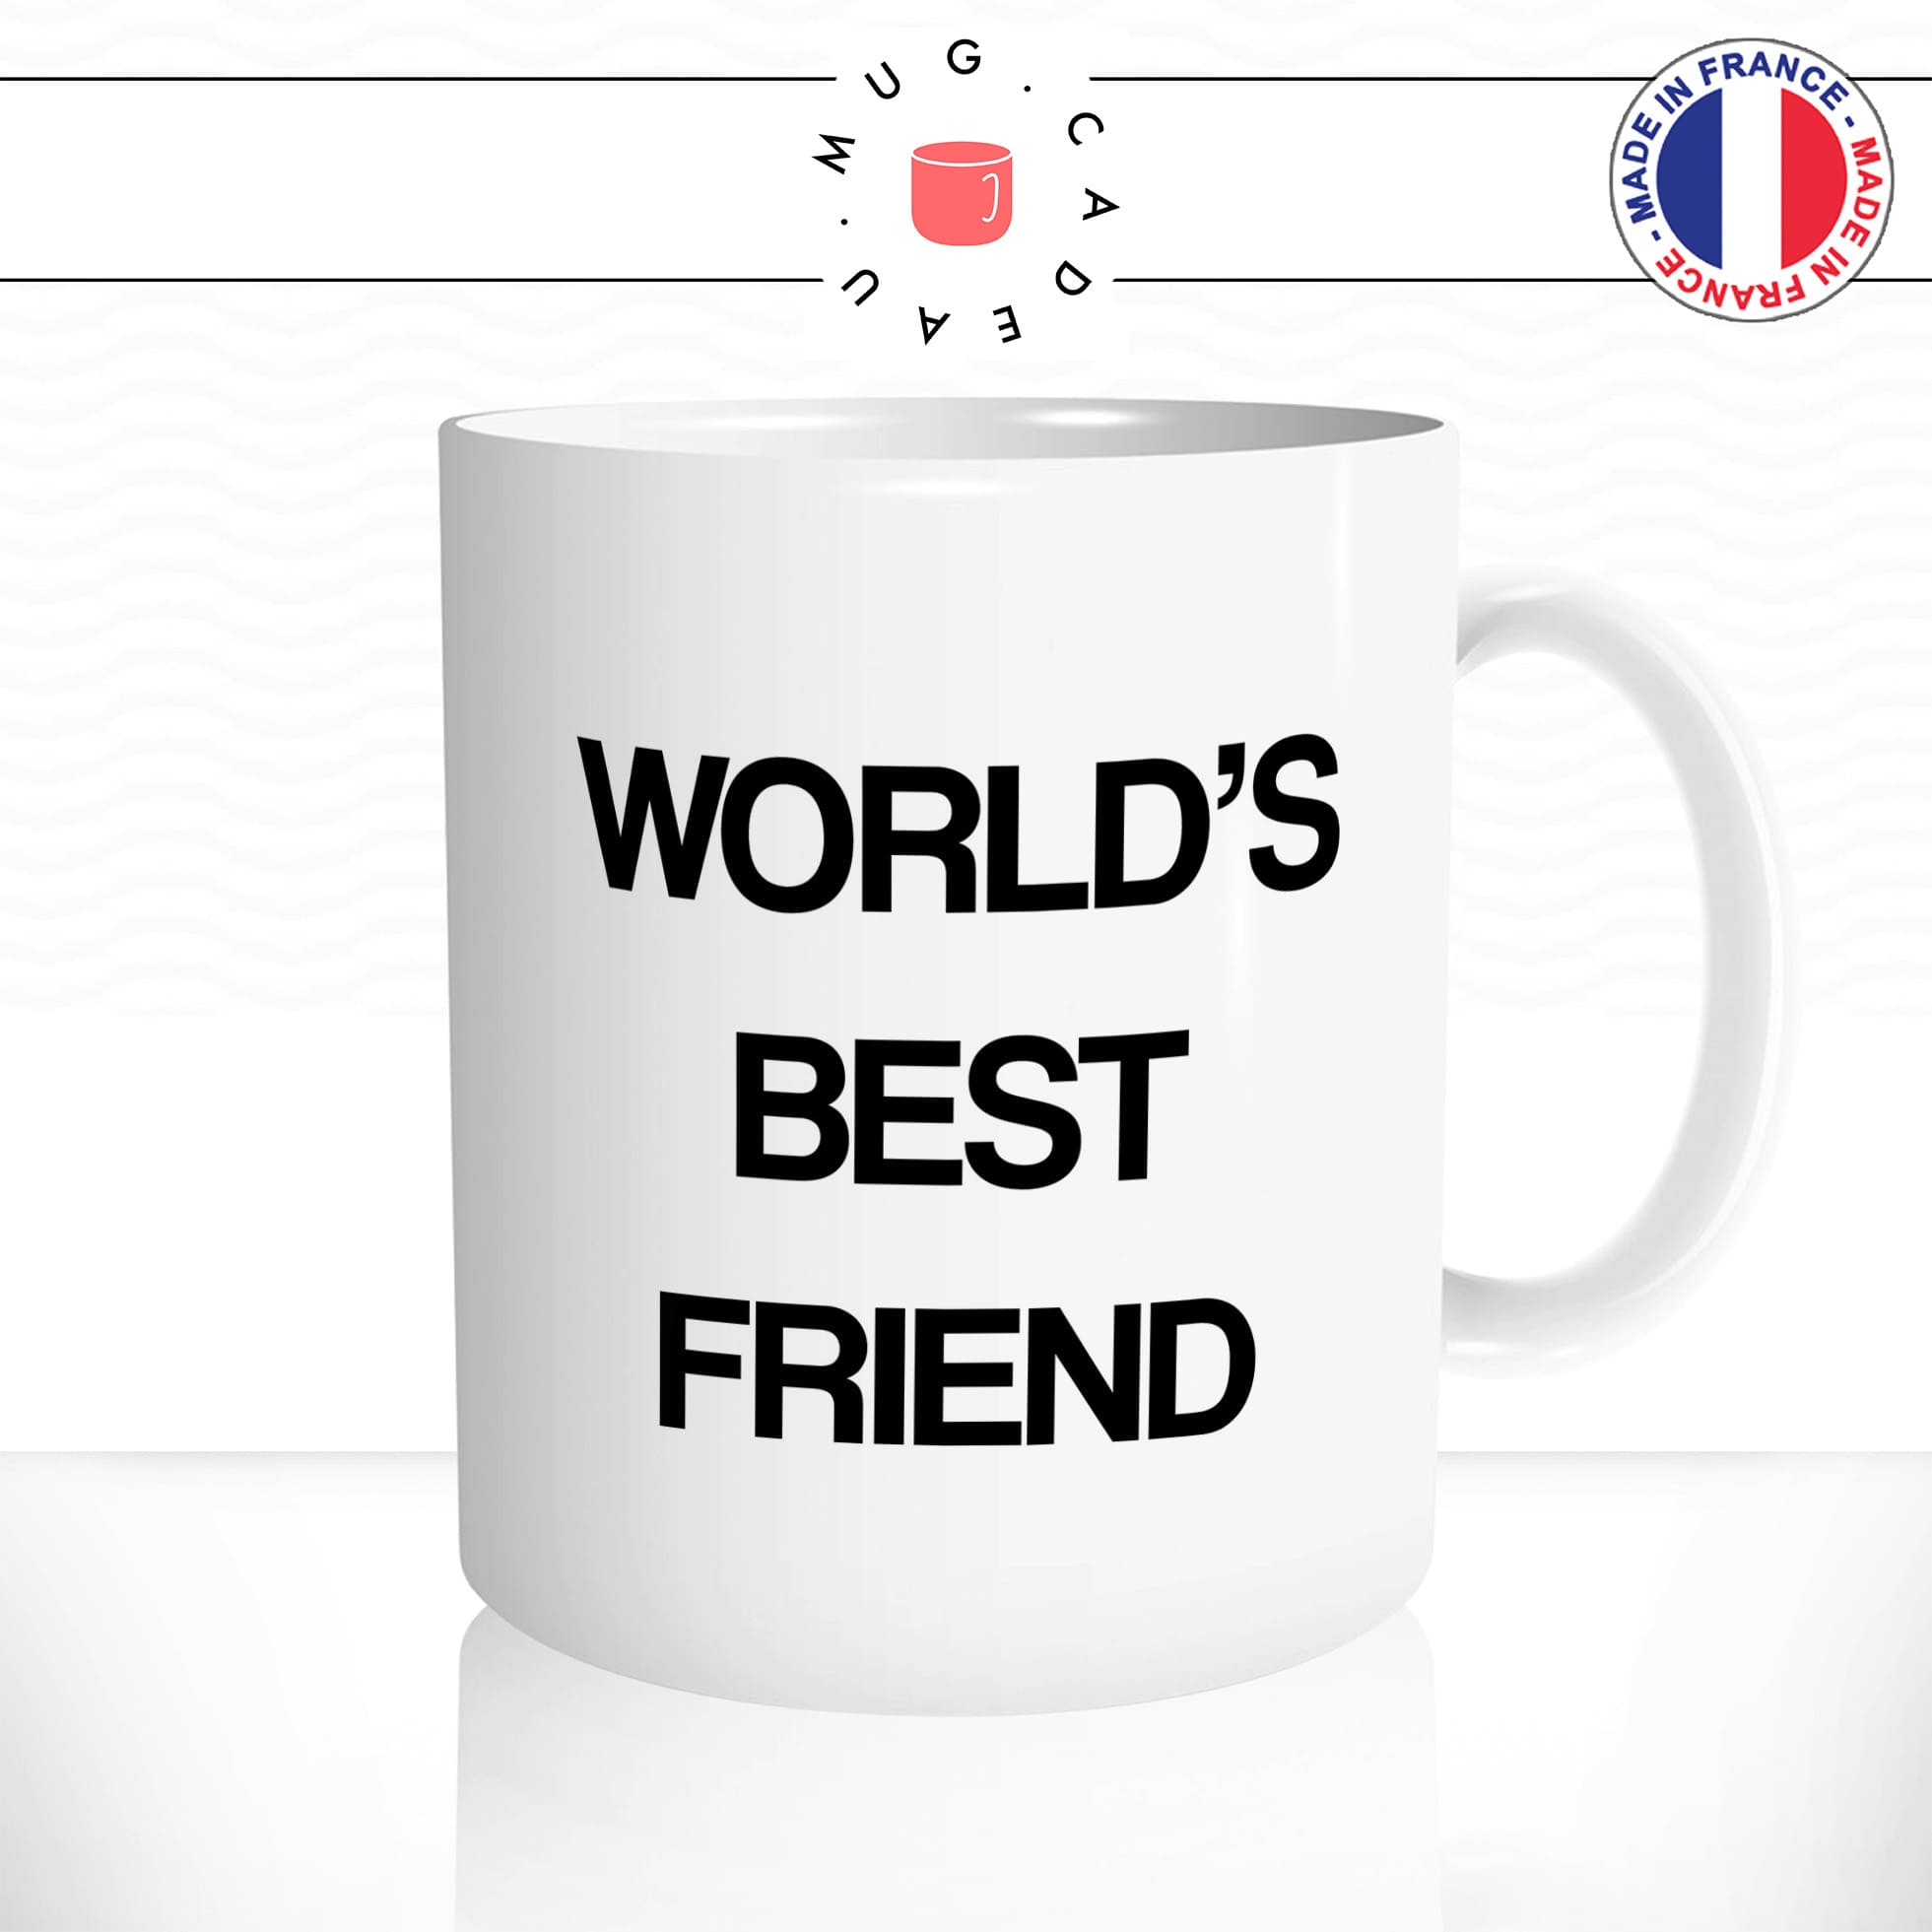 mug-tasse-worlds-best-friend-meilleur-ami-pote-the-office-série-offrir-fun-humour-idée-cadeau-originale-personnalisée2